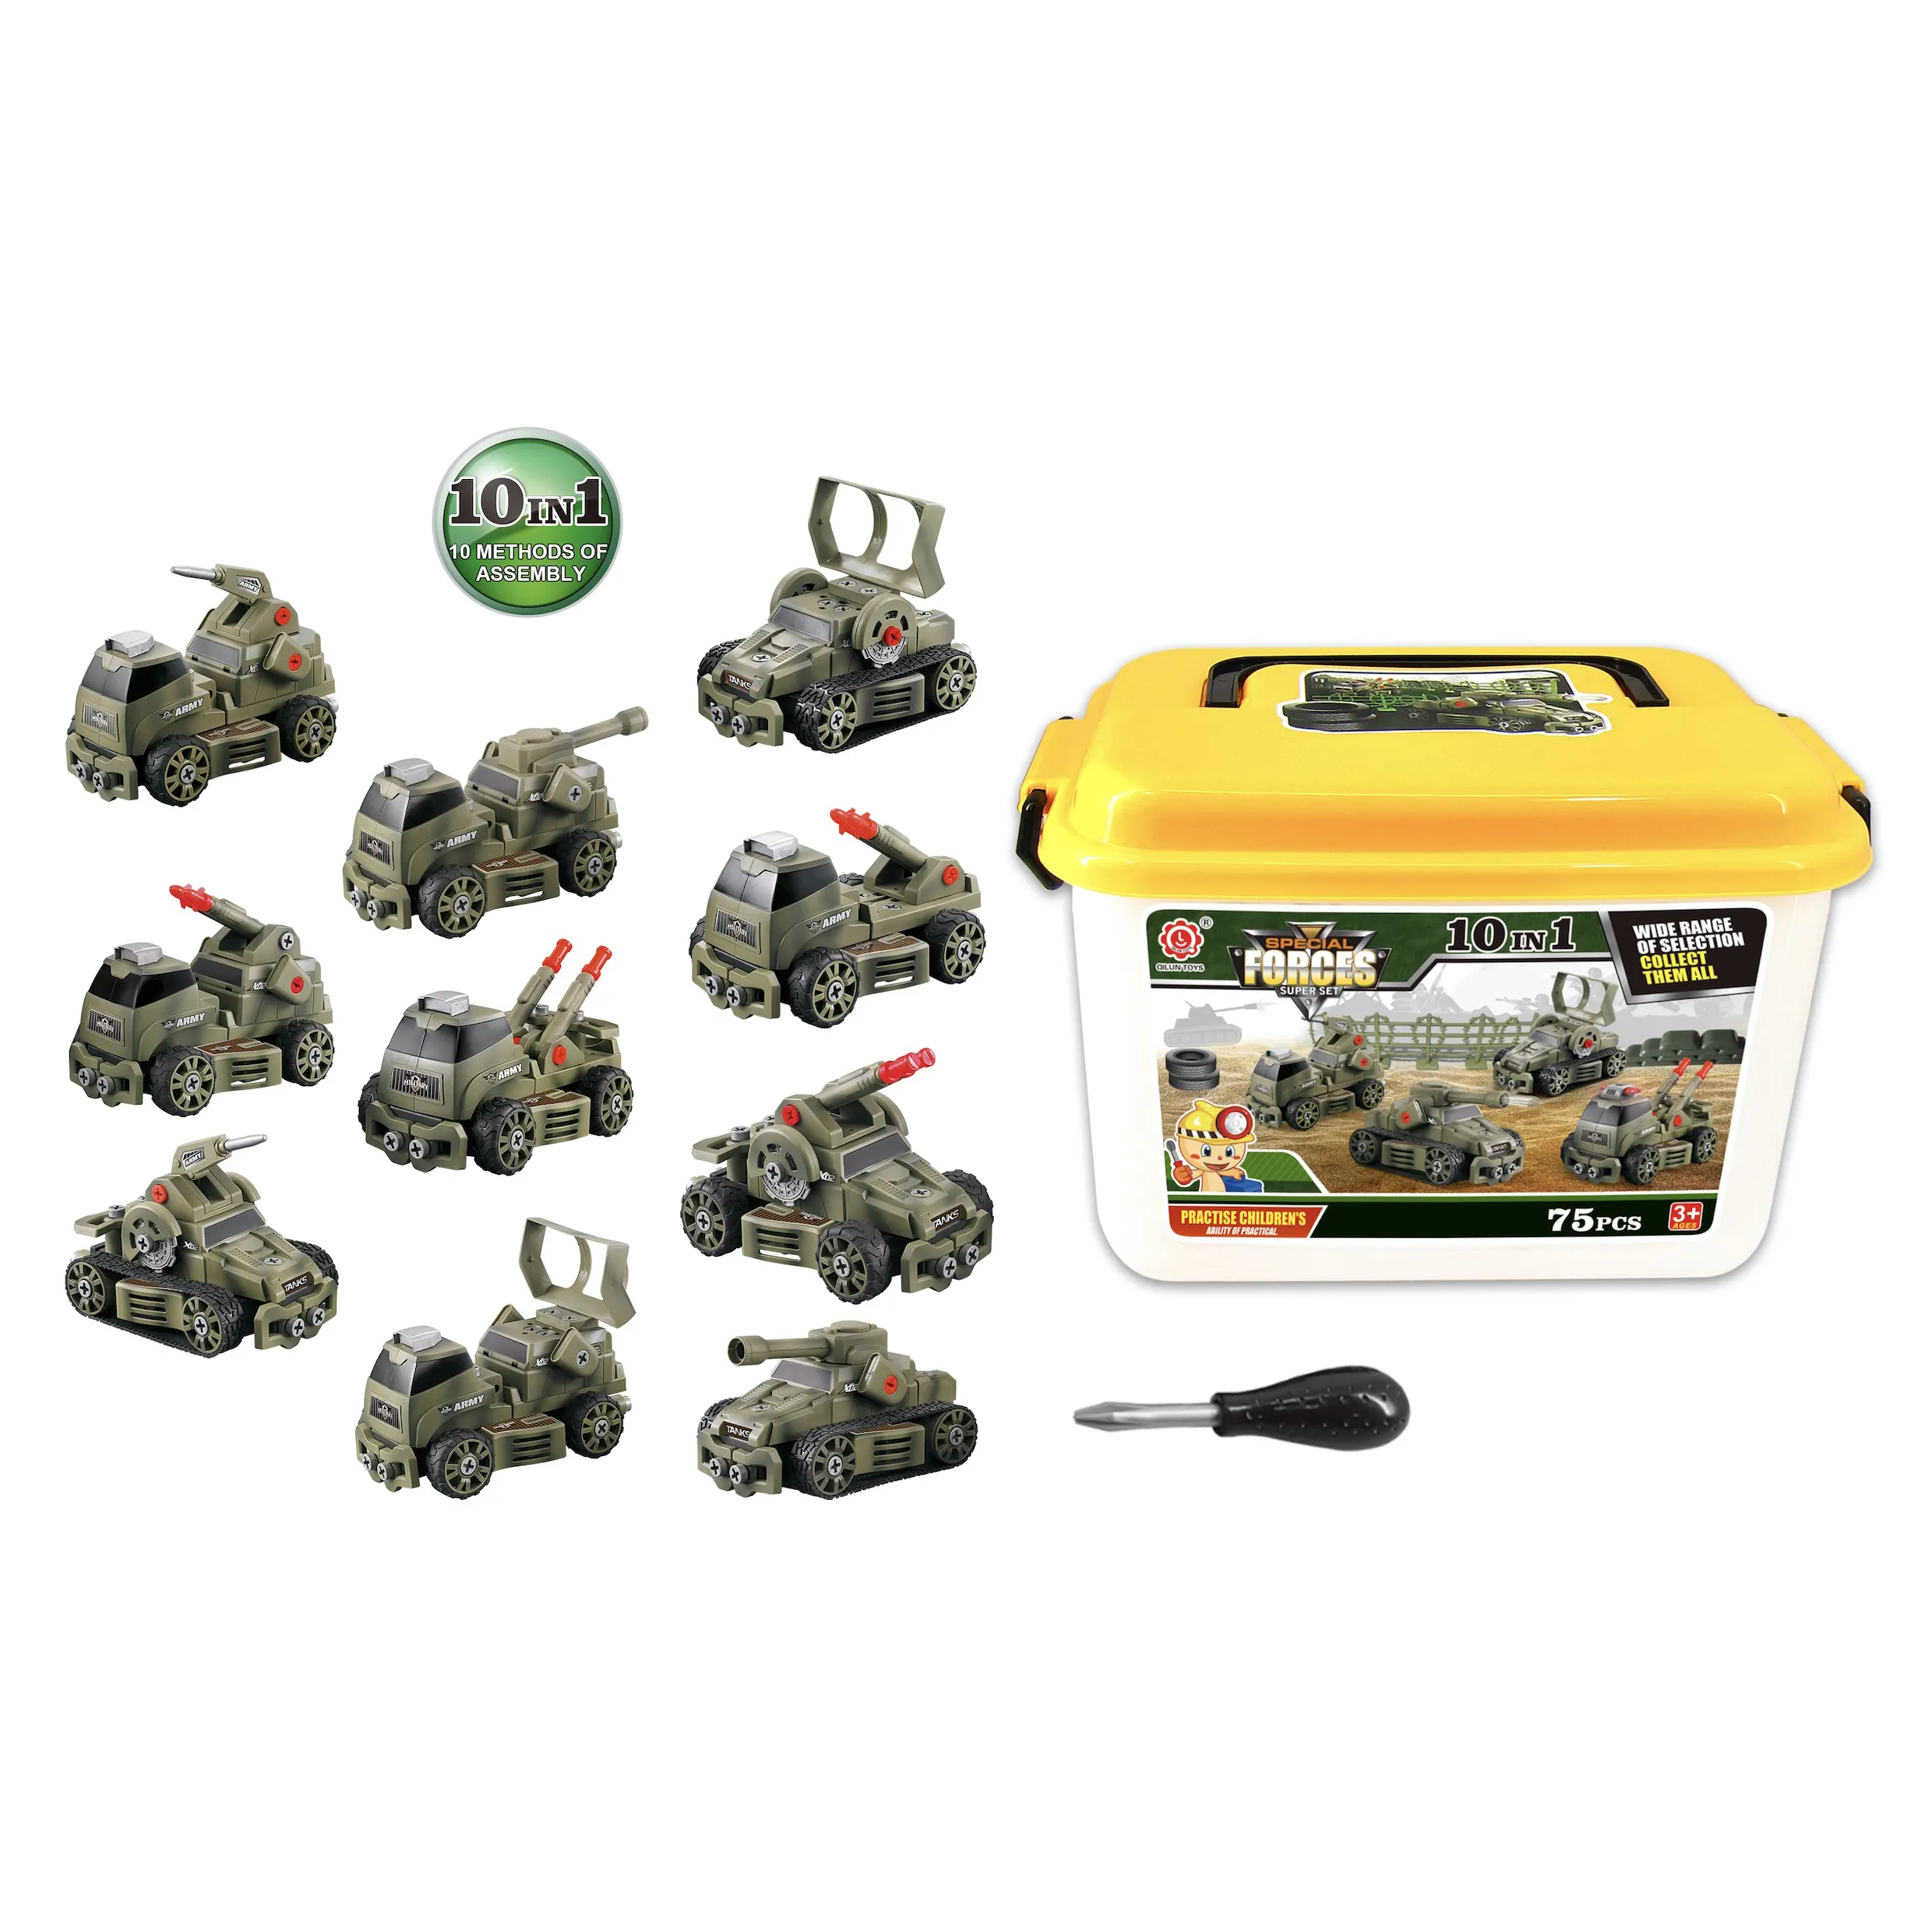 Venta caliente vehículo militar coche conjunto niños pequeño Mini montaje modelo coches rueda libre coche juguete para niños regalo